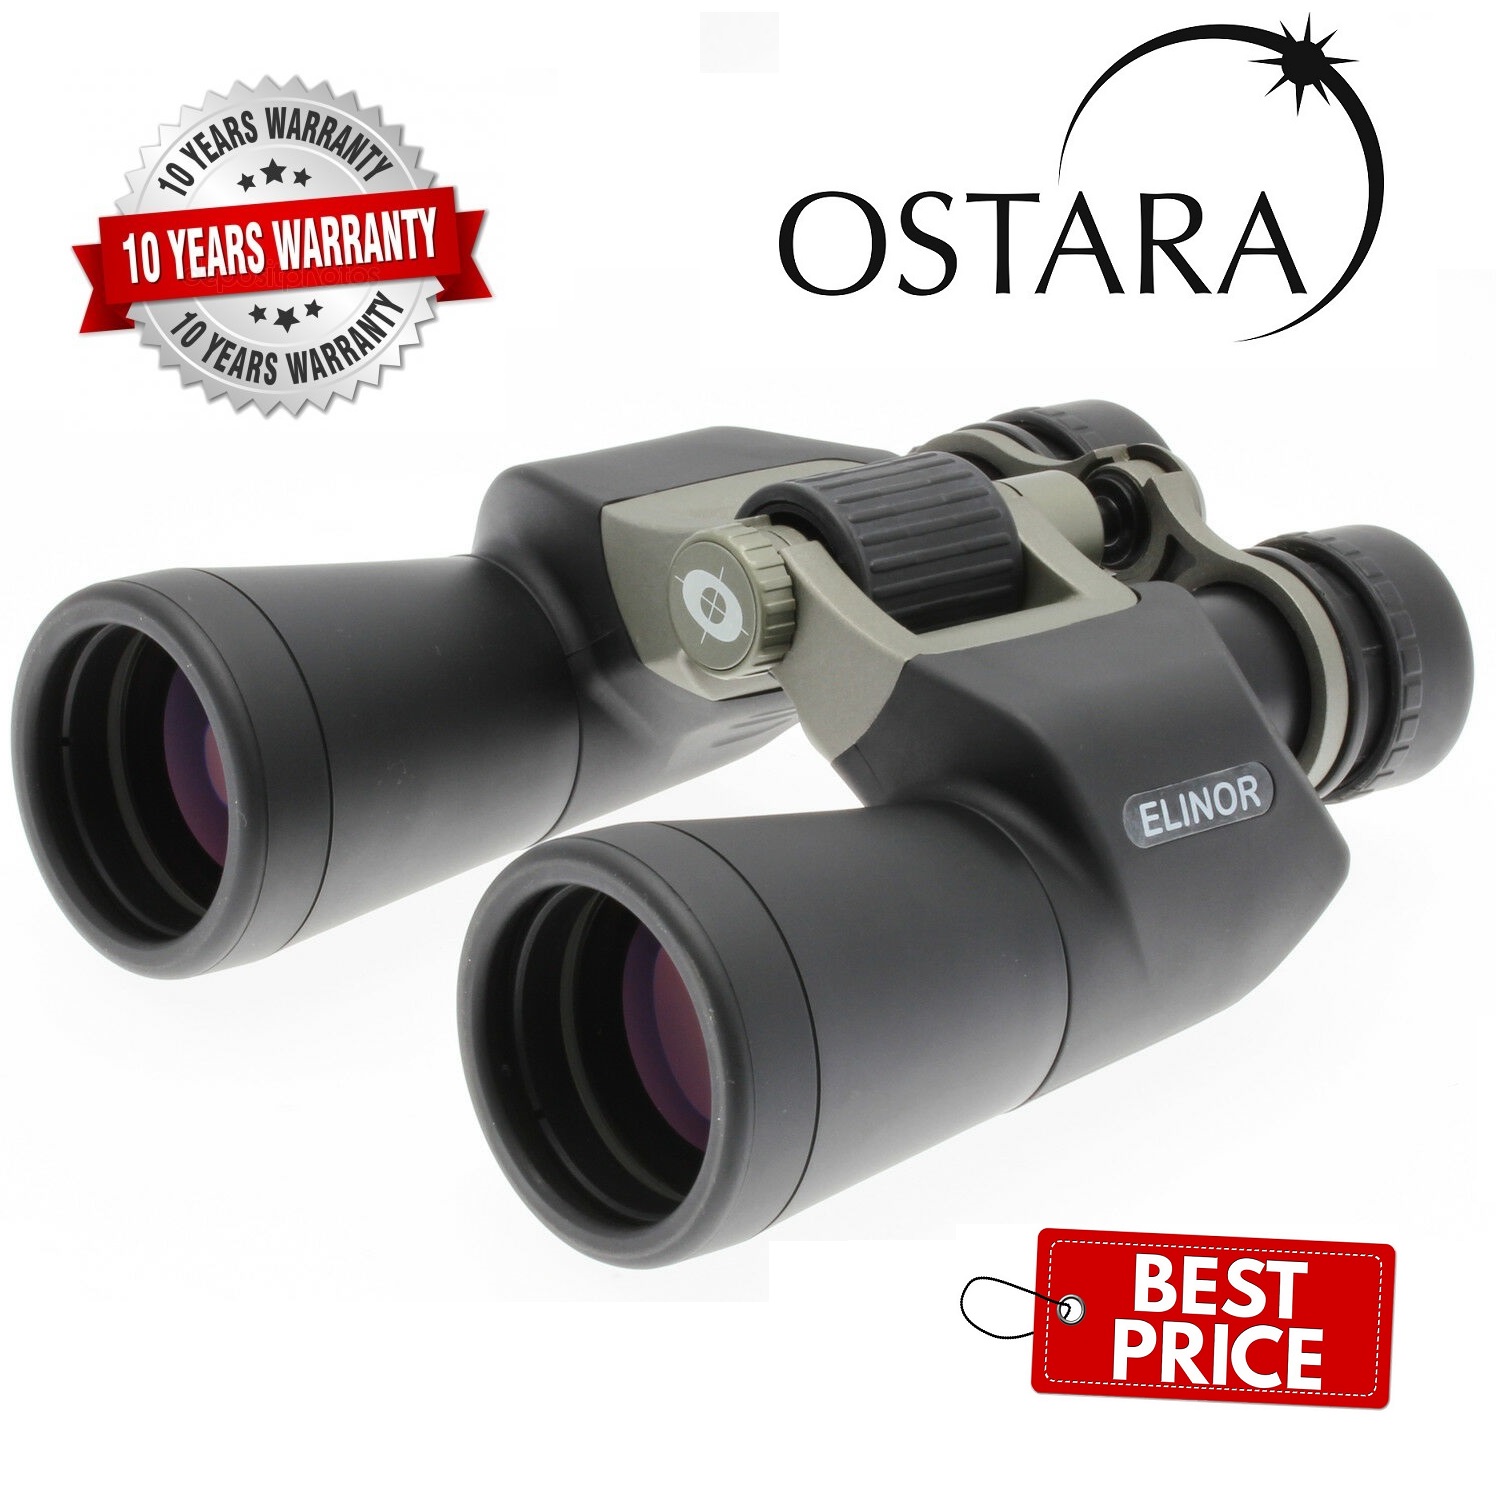 Ostara Elinor 7x50 Style Binocular